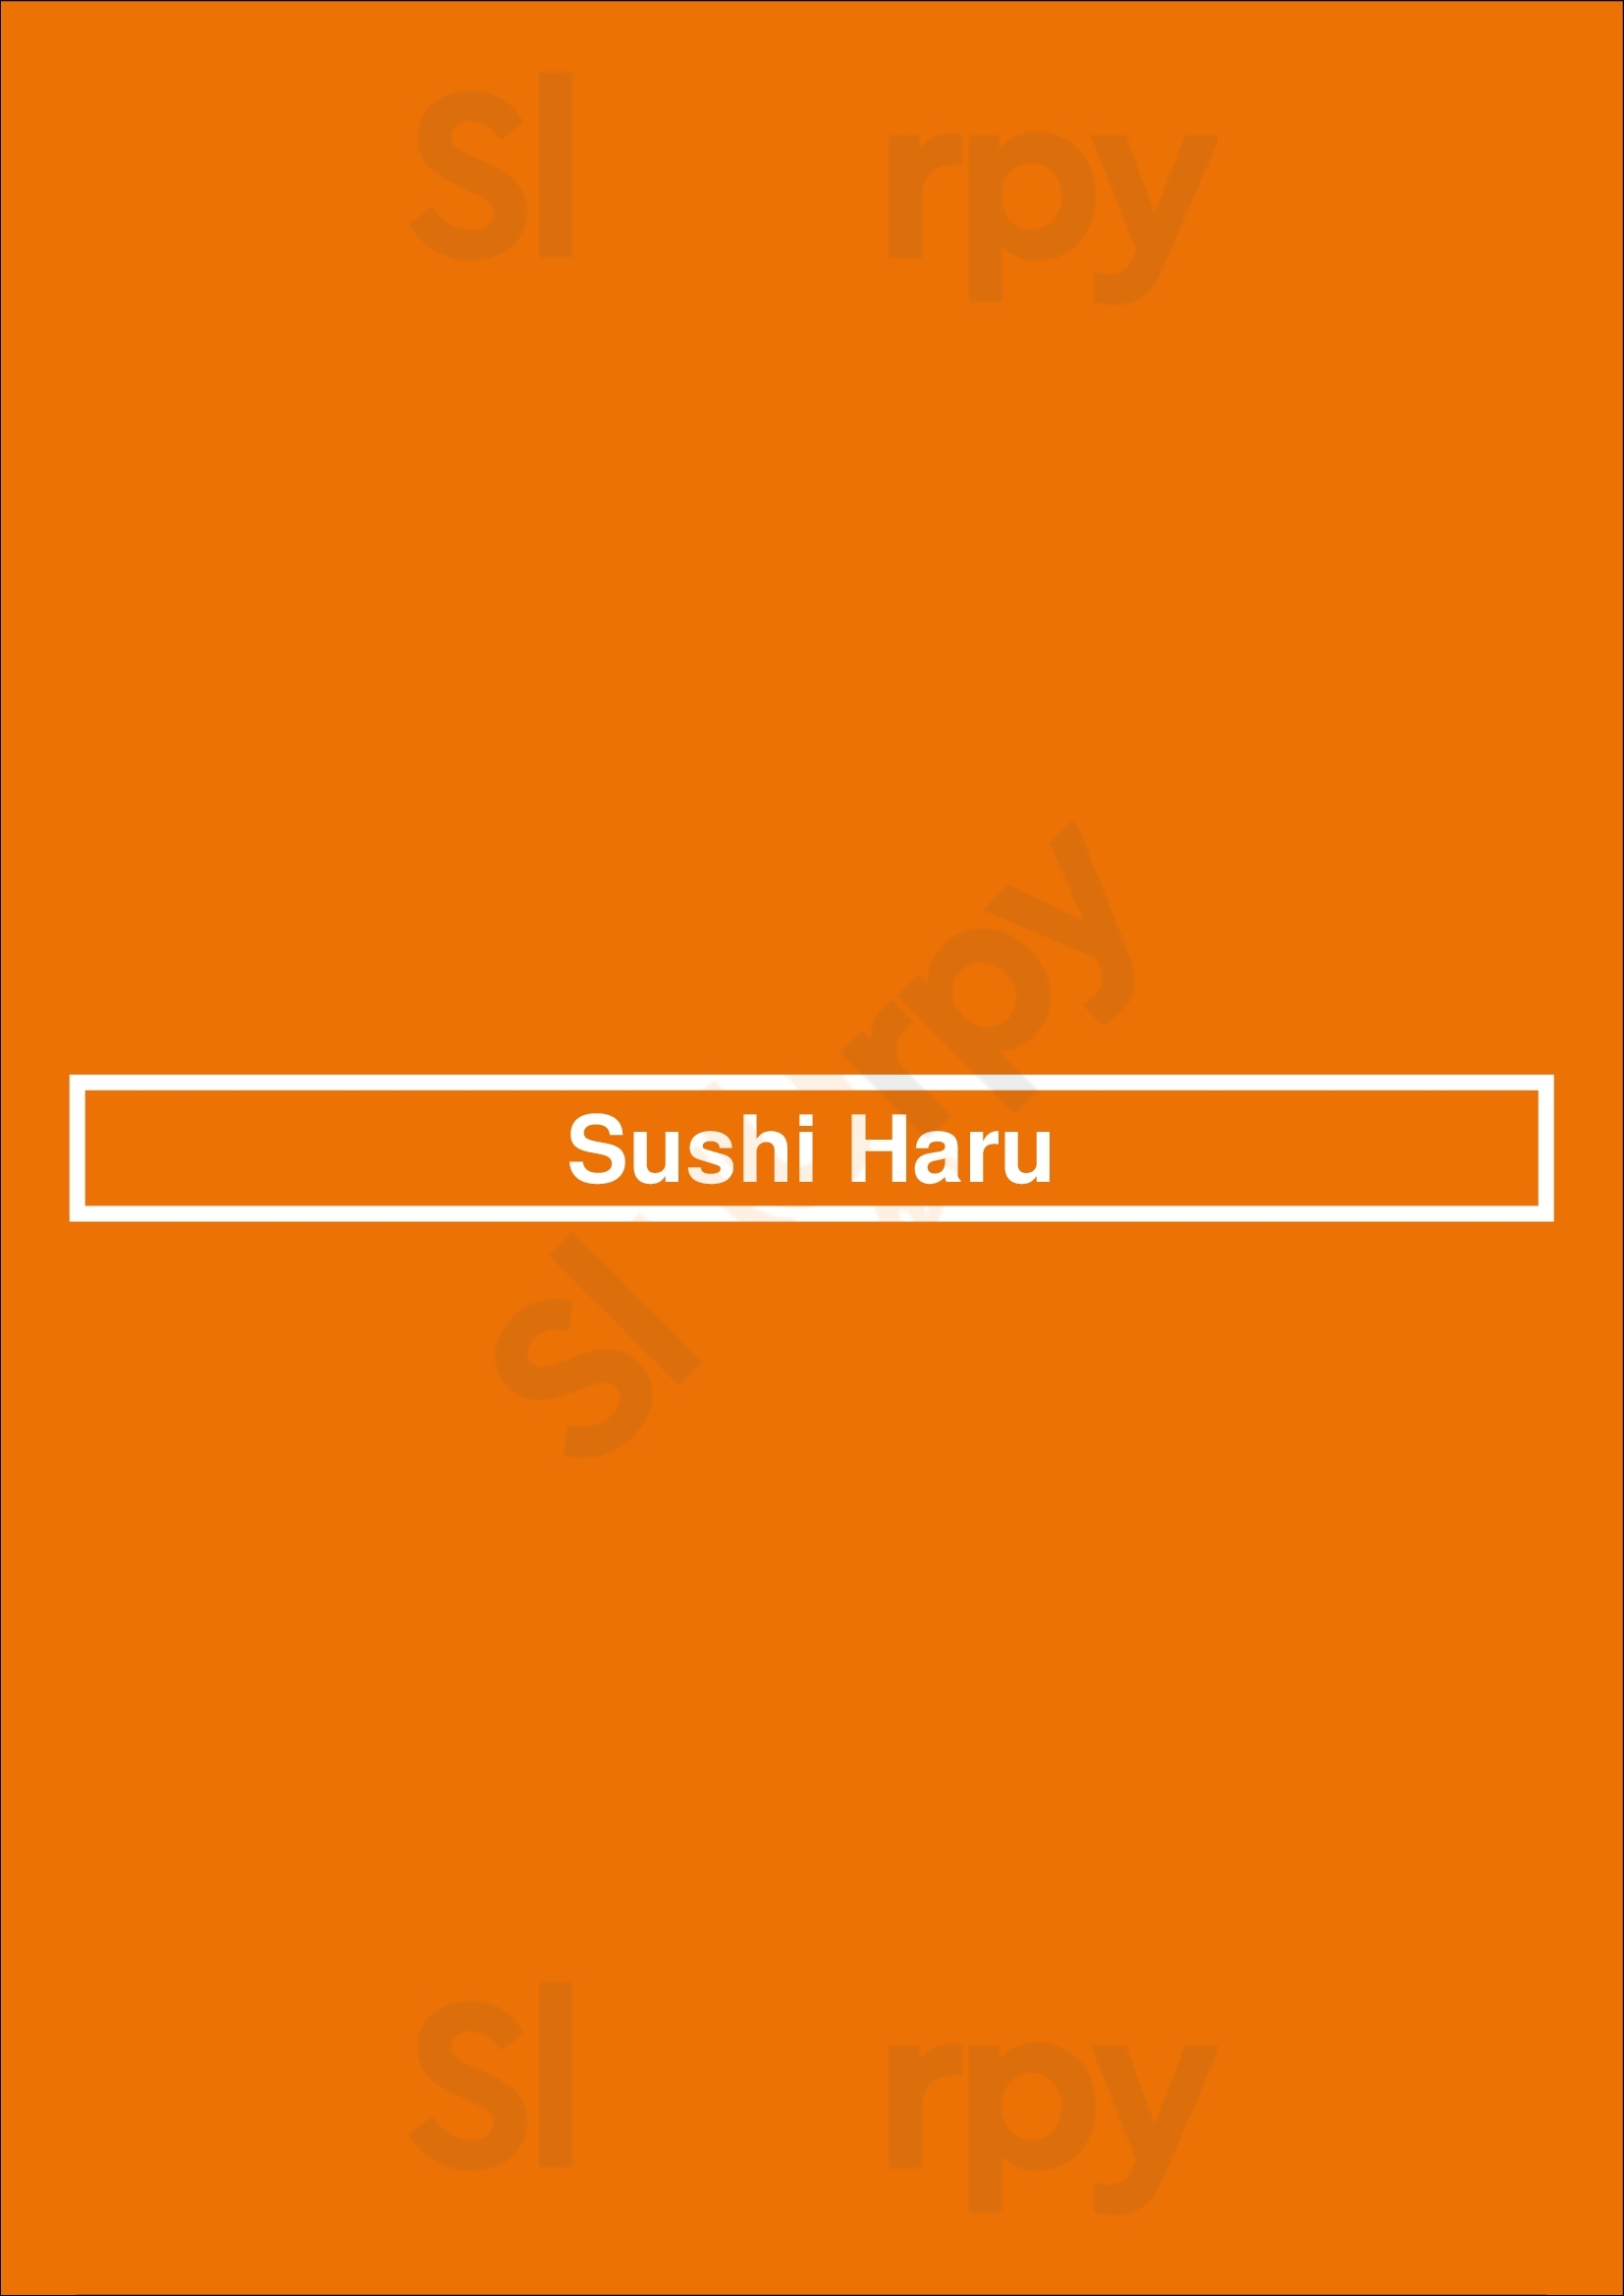 Sushi Haru Airdrie Menu - 1